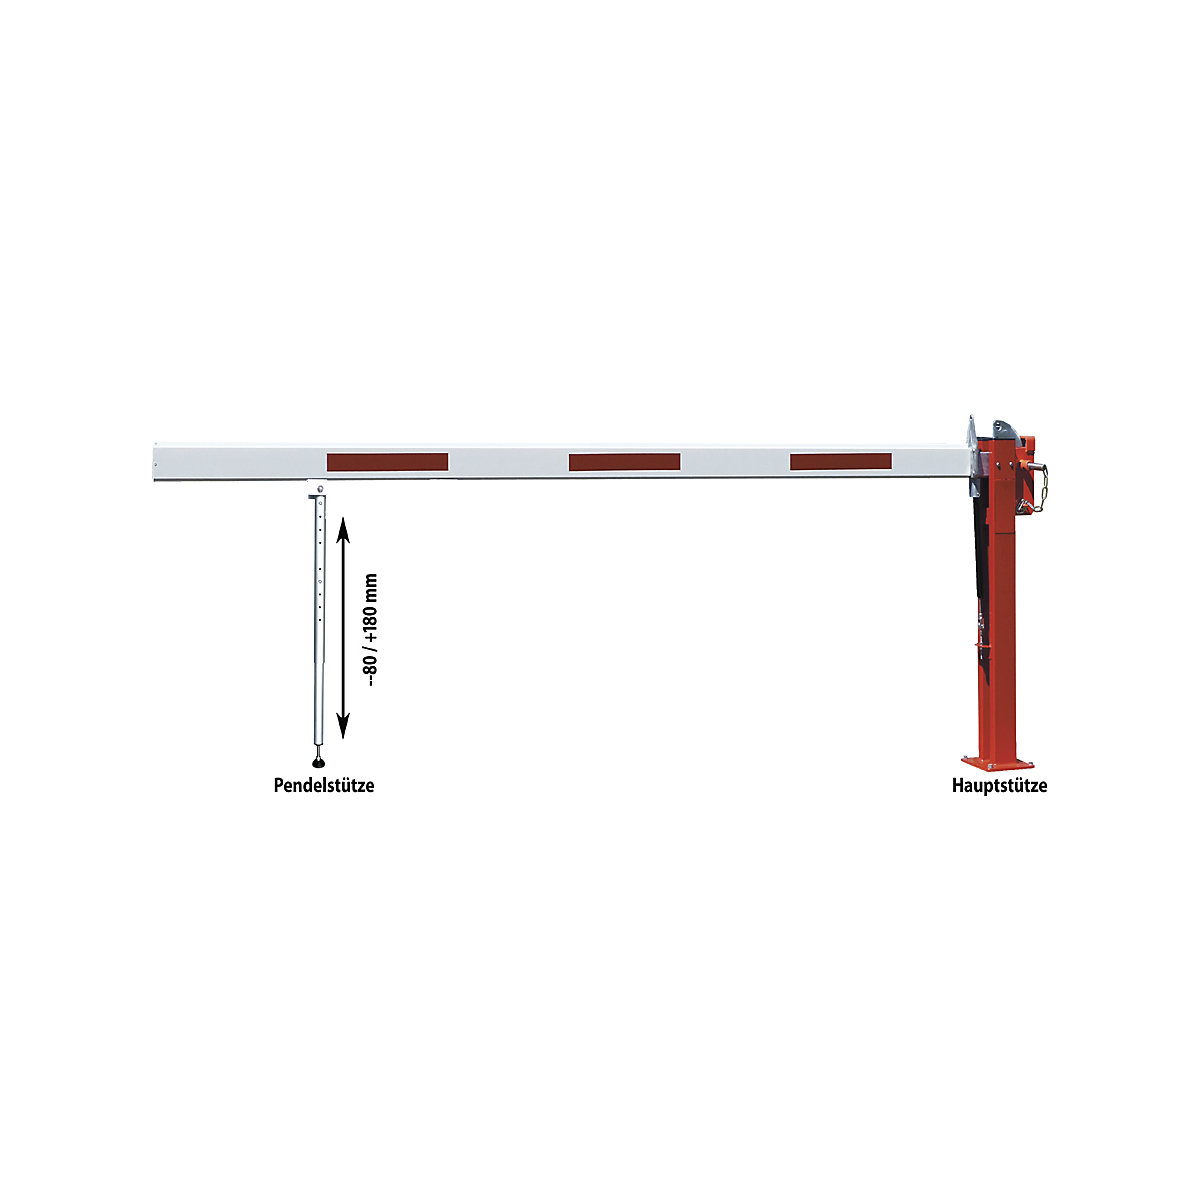 Barrière manuelle – Mannus, béquille d'appui sur ressorts, longueur flèche 3 m